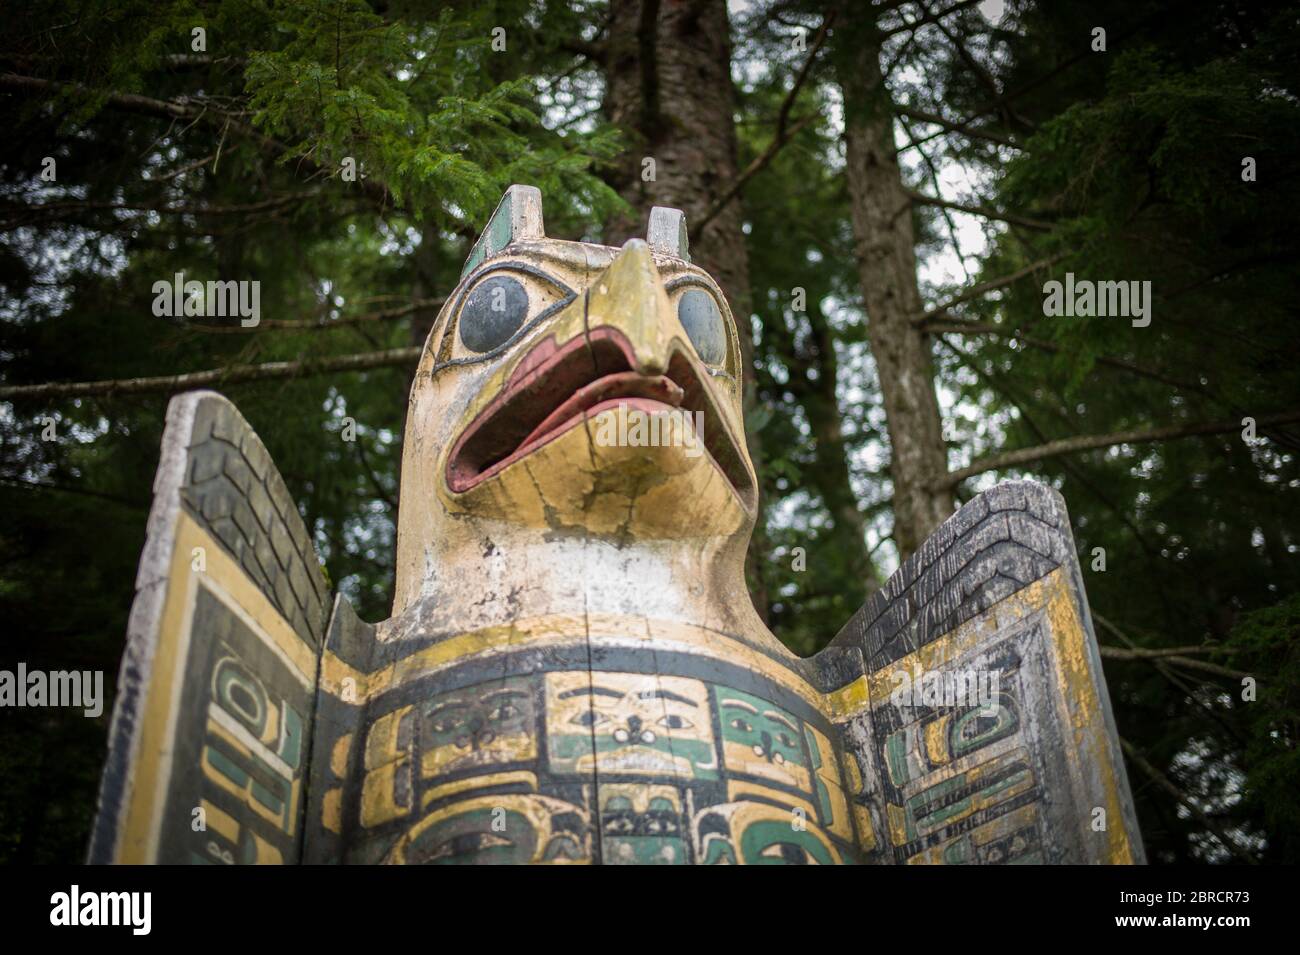 Totem Bight State Historical Park, Ketchikan, Alaska, EE.UU., muestra réplicas y postes de tótem nativos americanos restaurados incluyendo marcador de tumba de águila Foto de stock